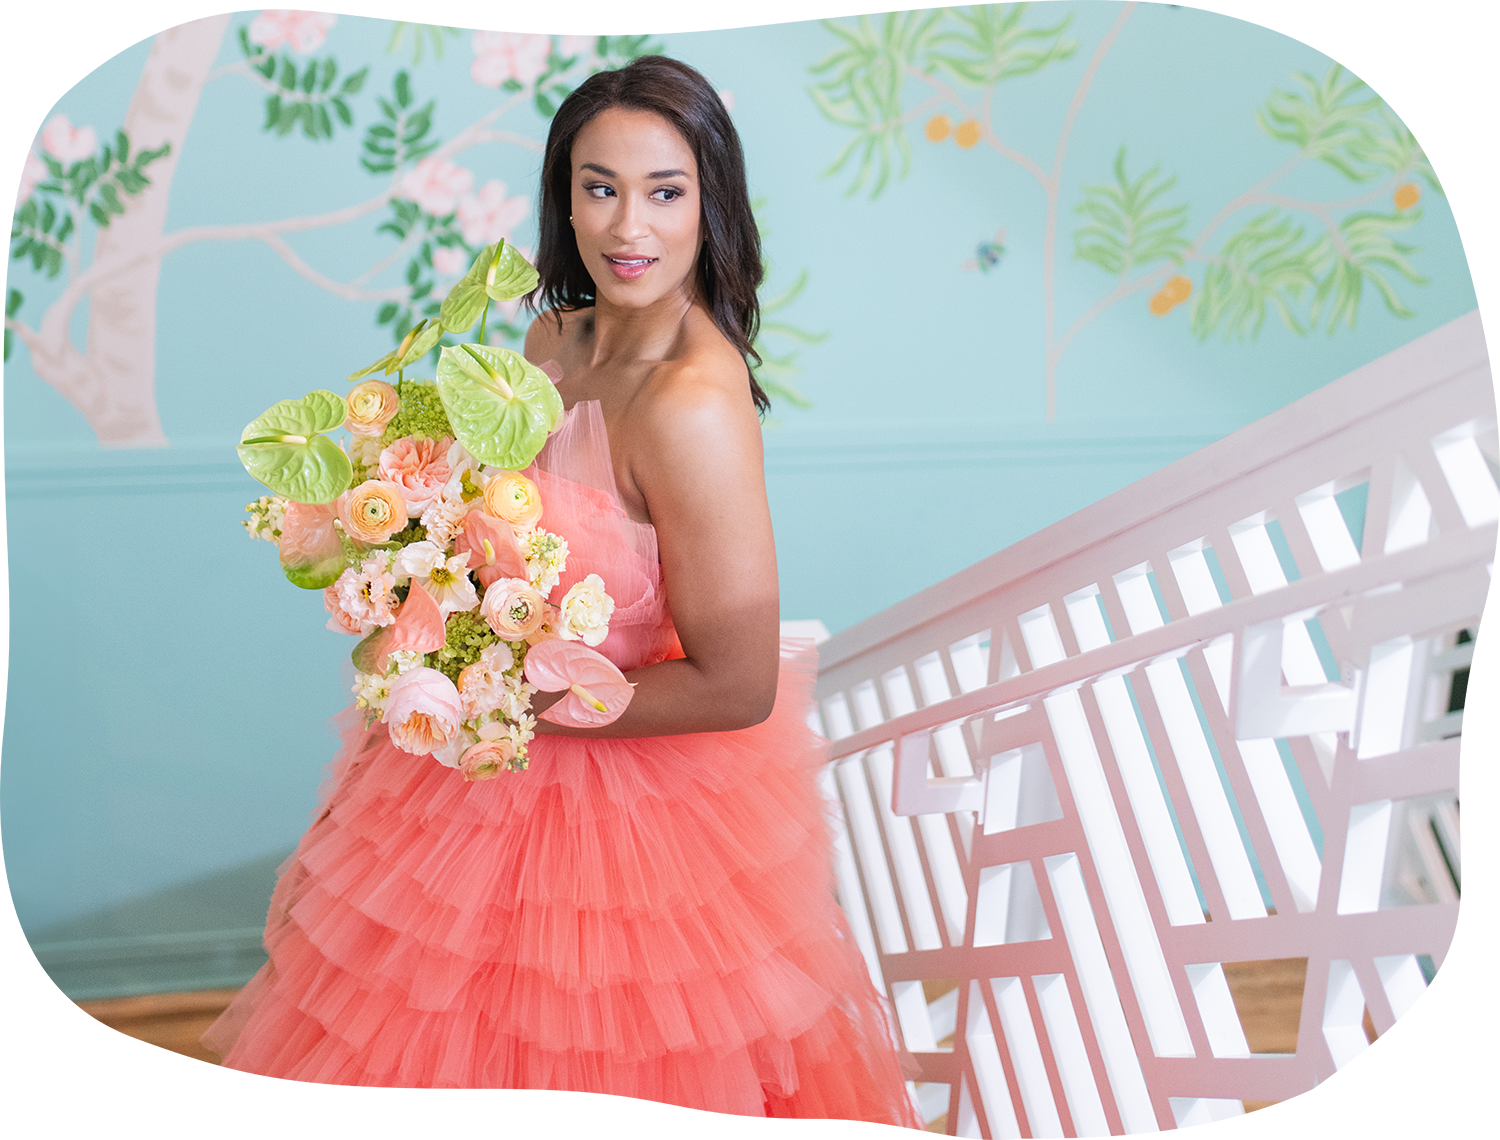 DIY Mini Floral Bouquet - Fresh Mommy Blog